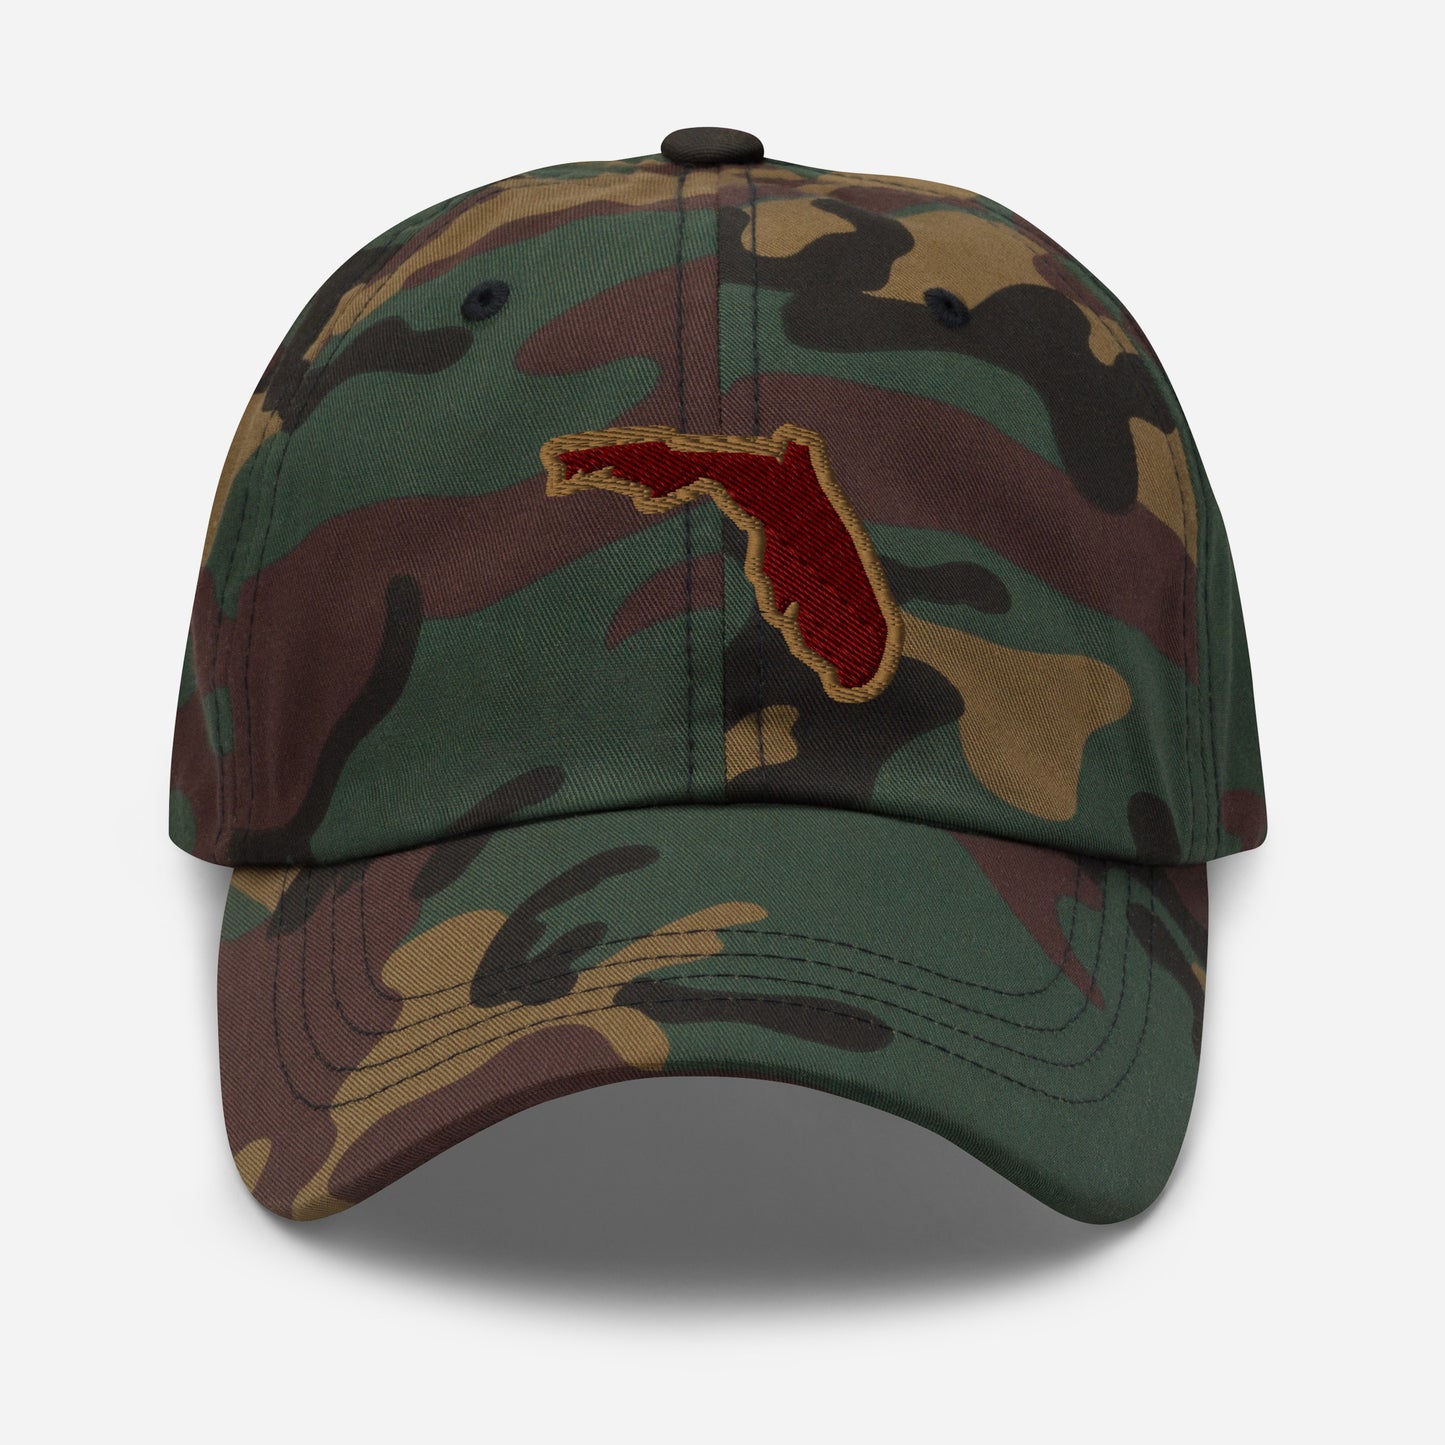 Seminoles Dad Hat: Florida State